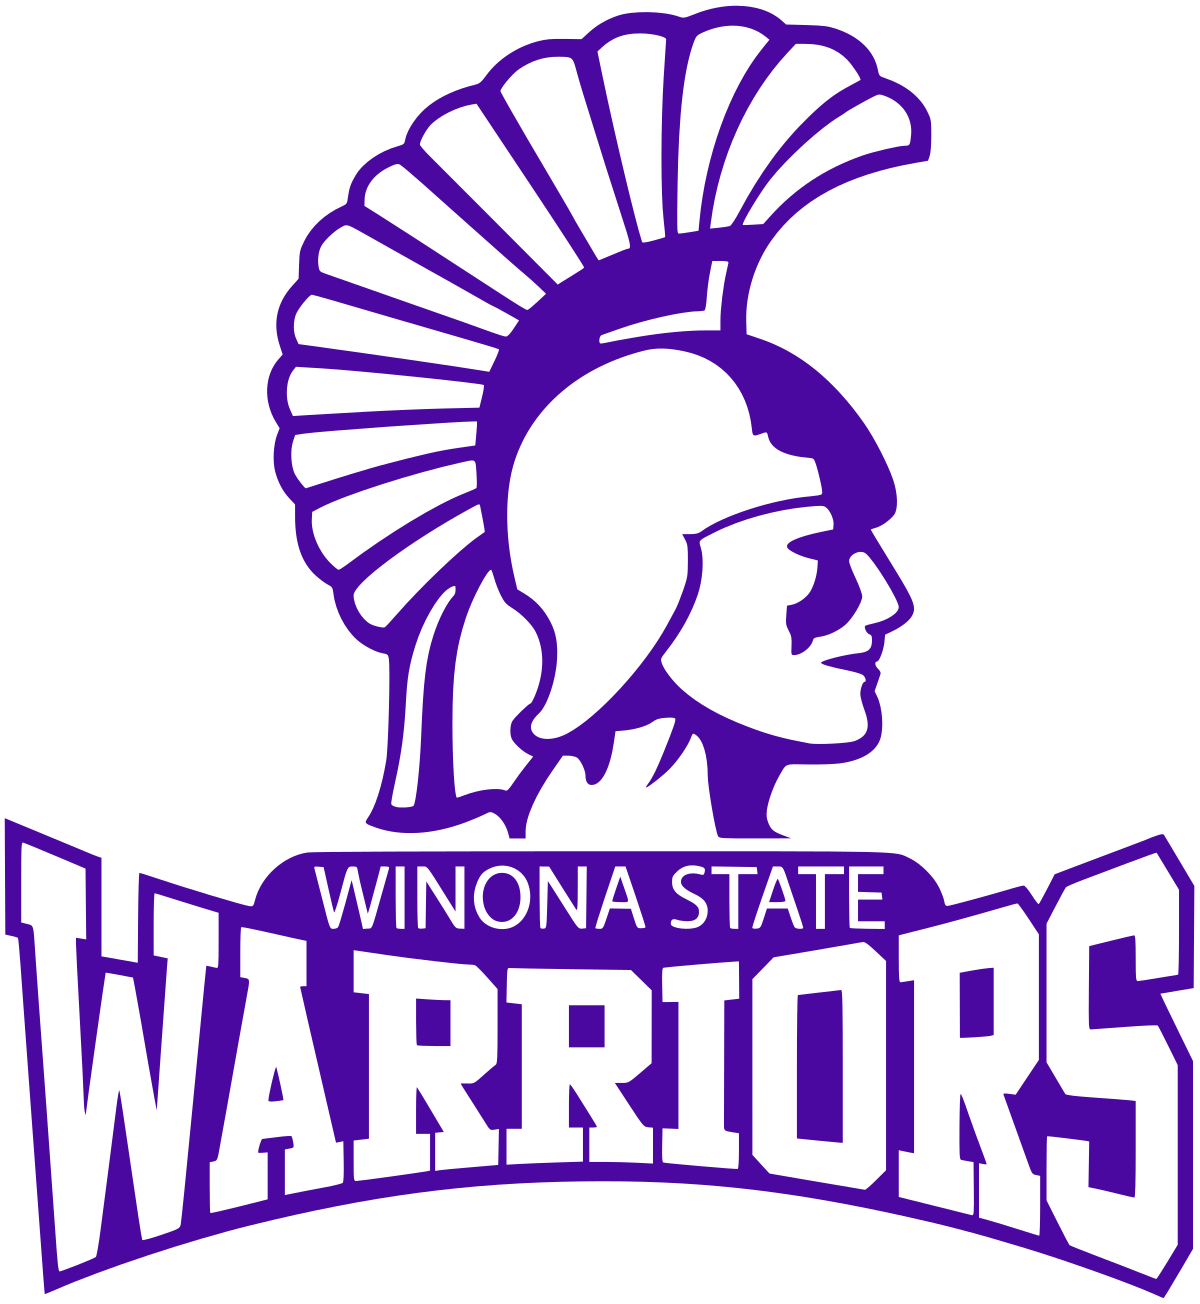 W: Winona State